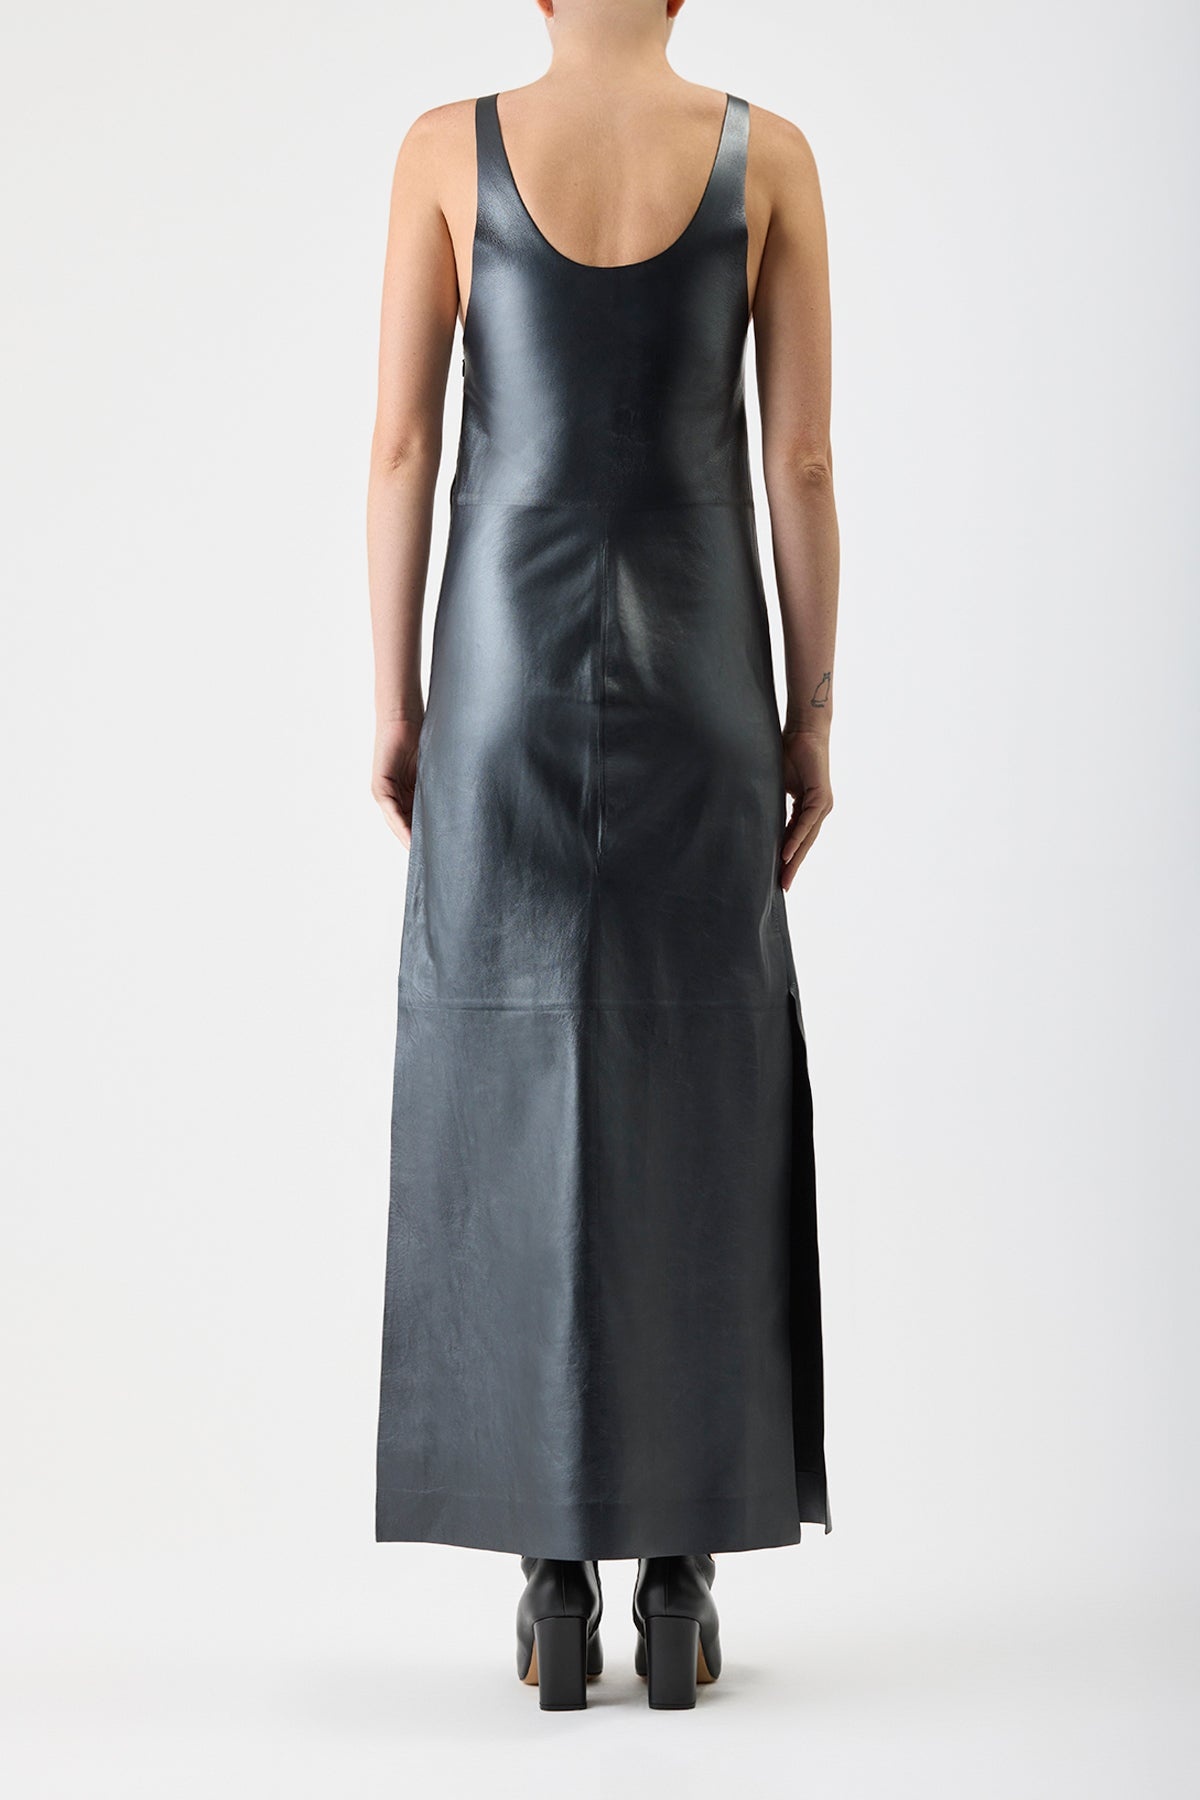 Ellson Dress in Leather - 5